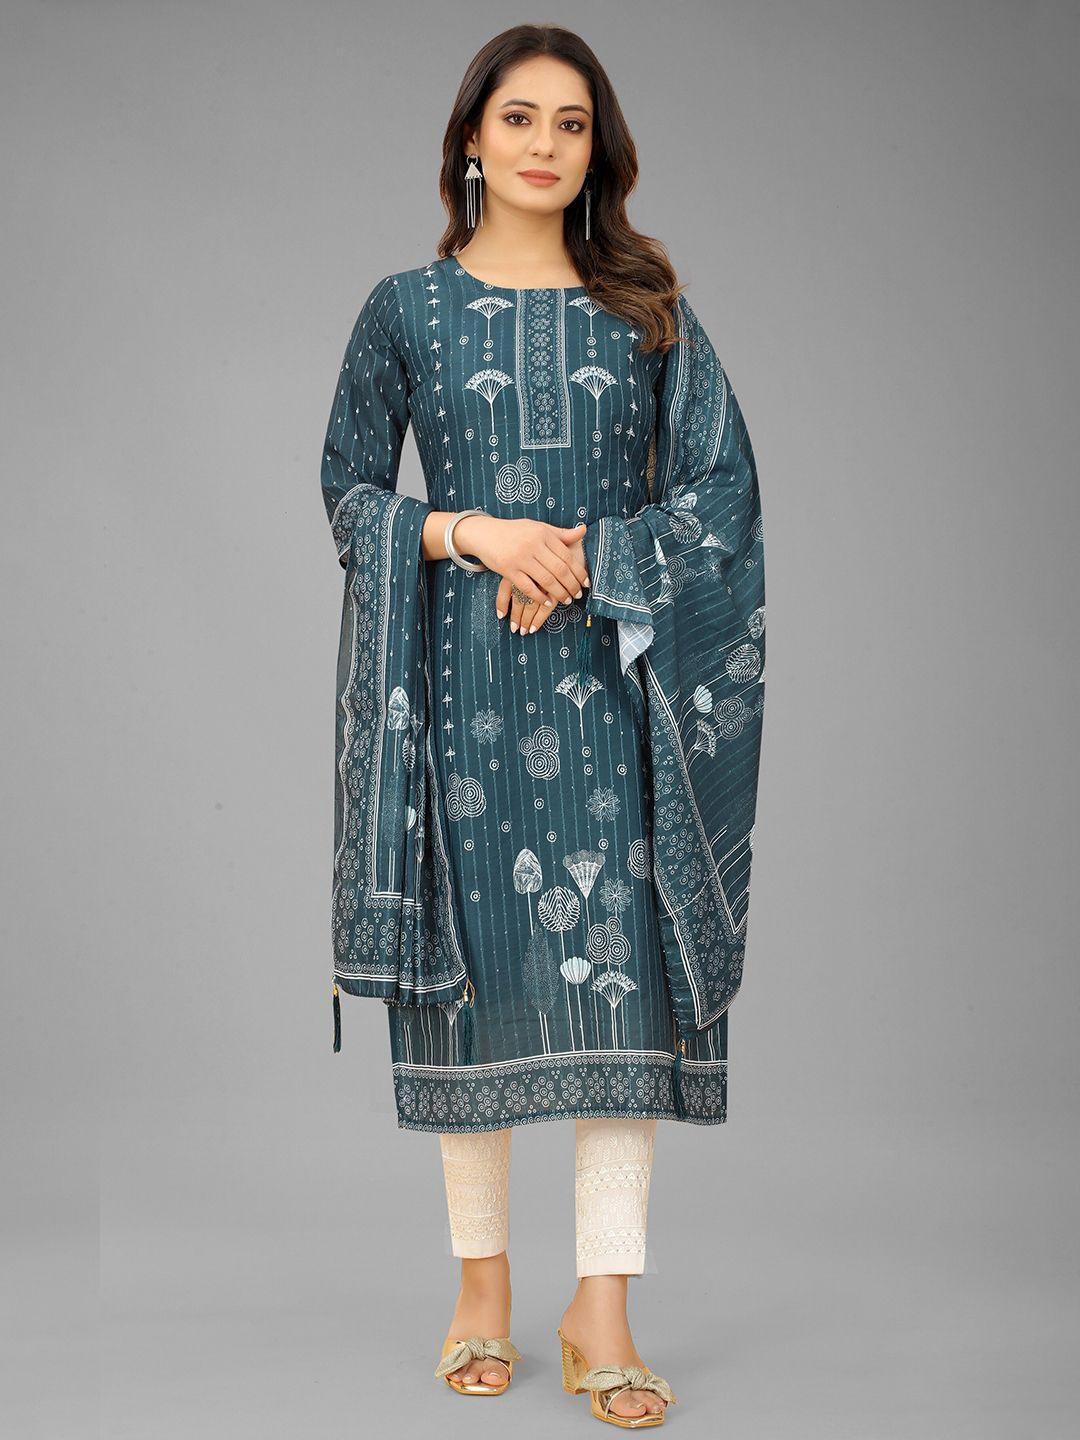 ruhi fashion women teal green & white floral printed kurta